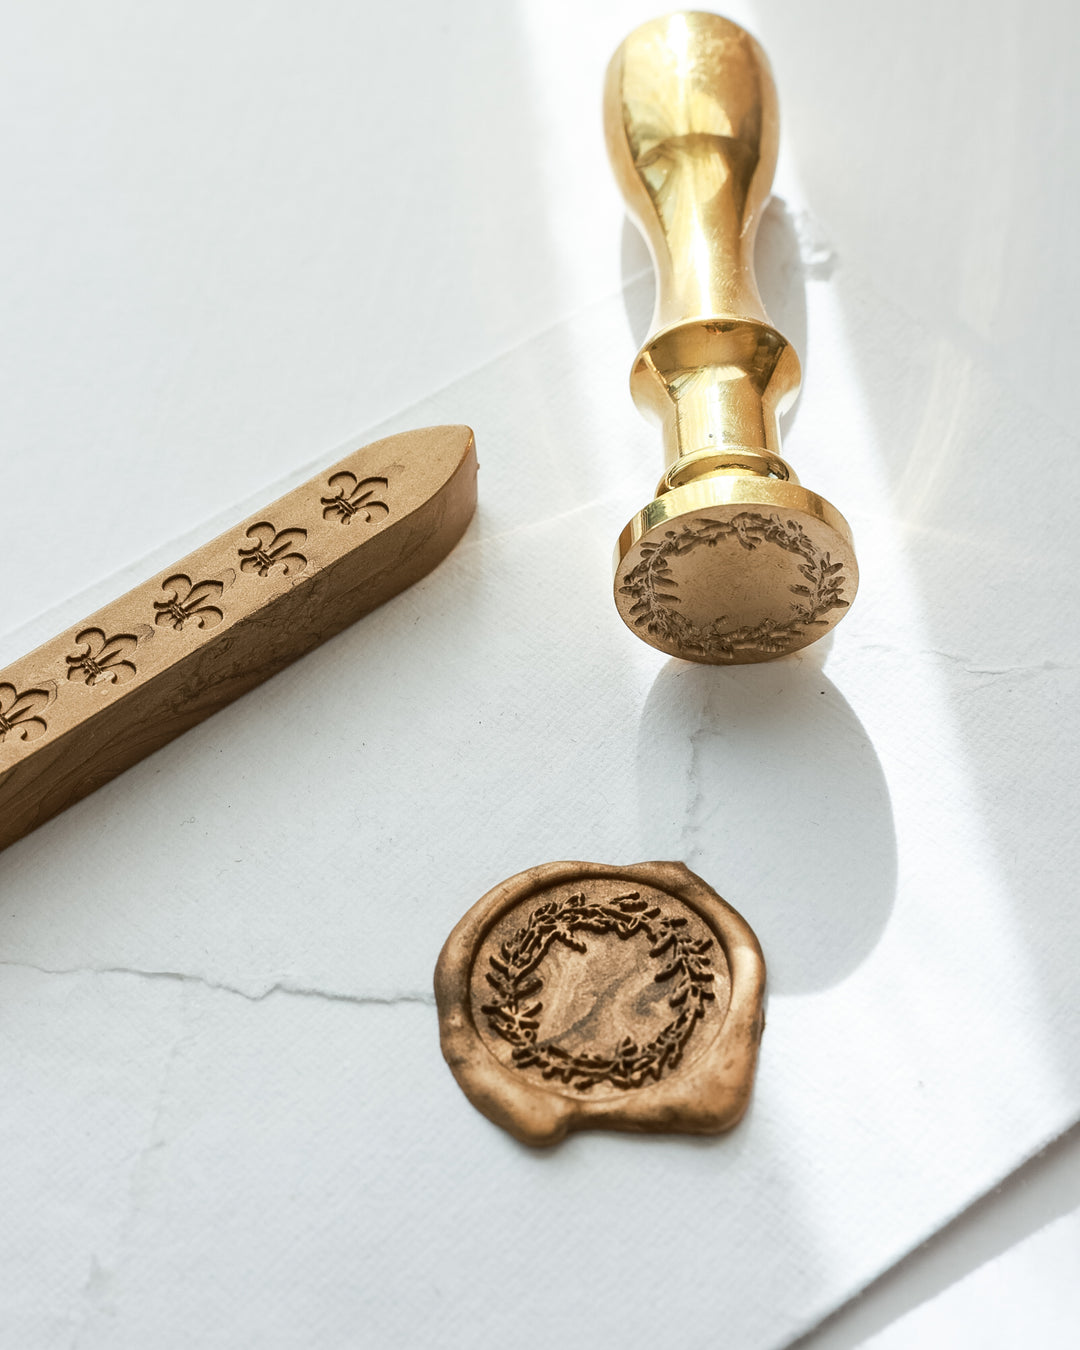 Wreath design brass wax seal stamp with wax stick